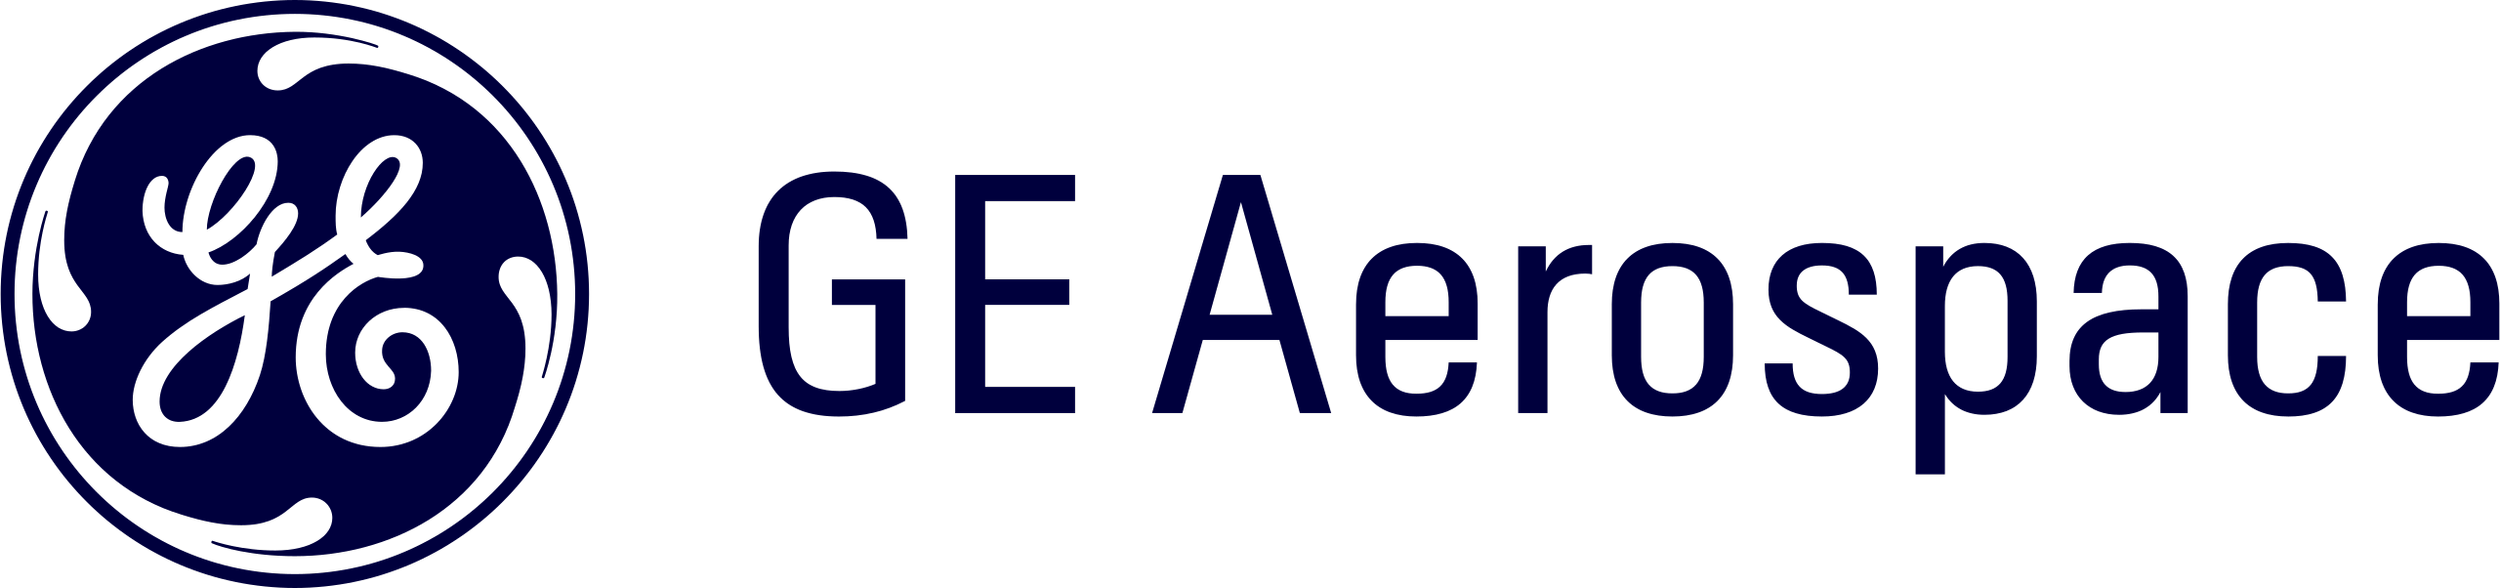 GE_Aerospace_logo.svg.png